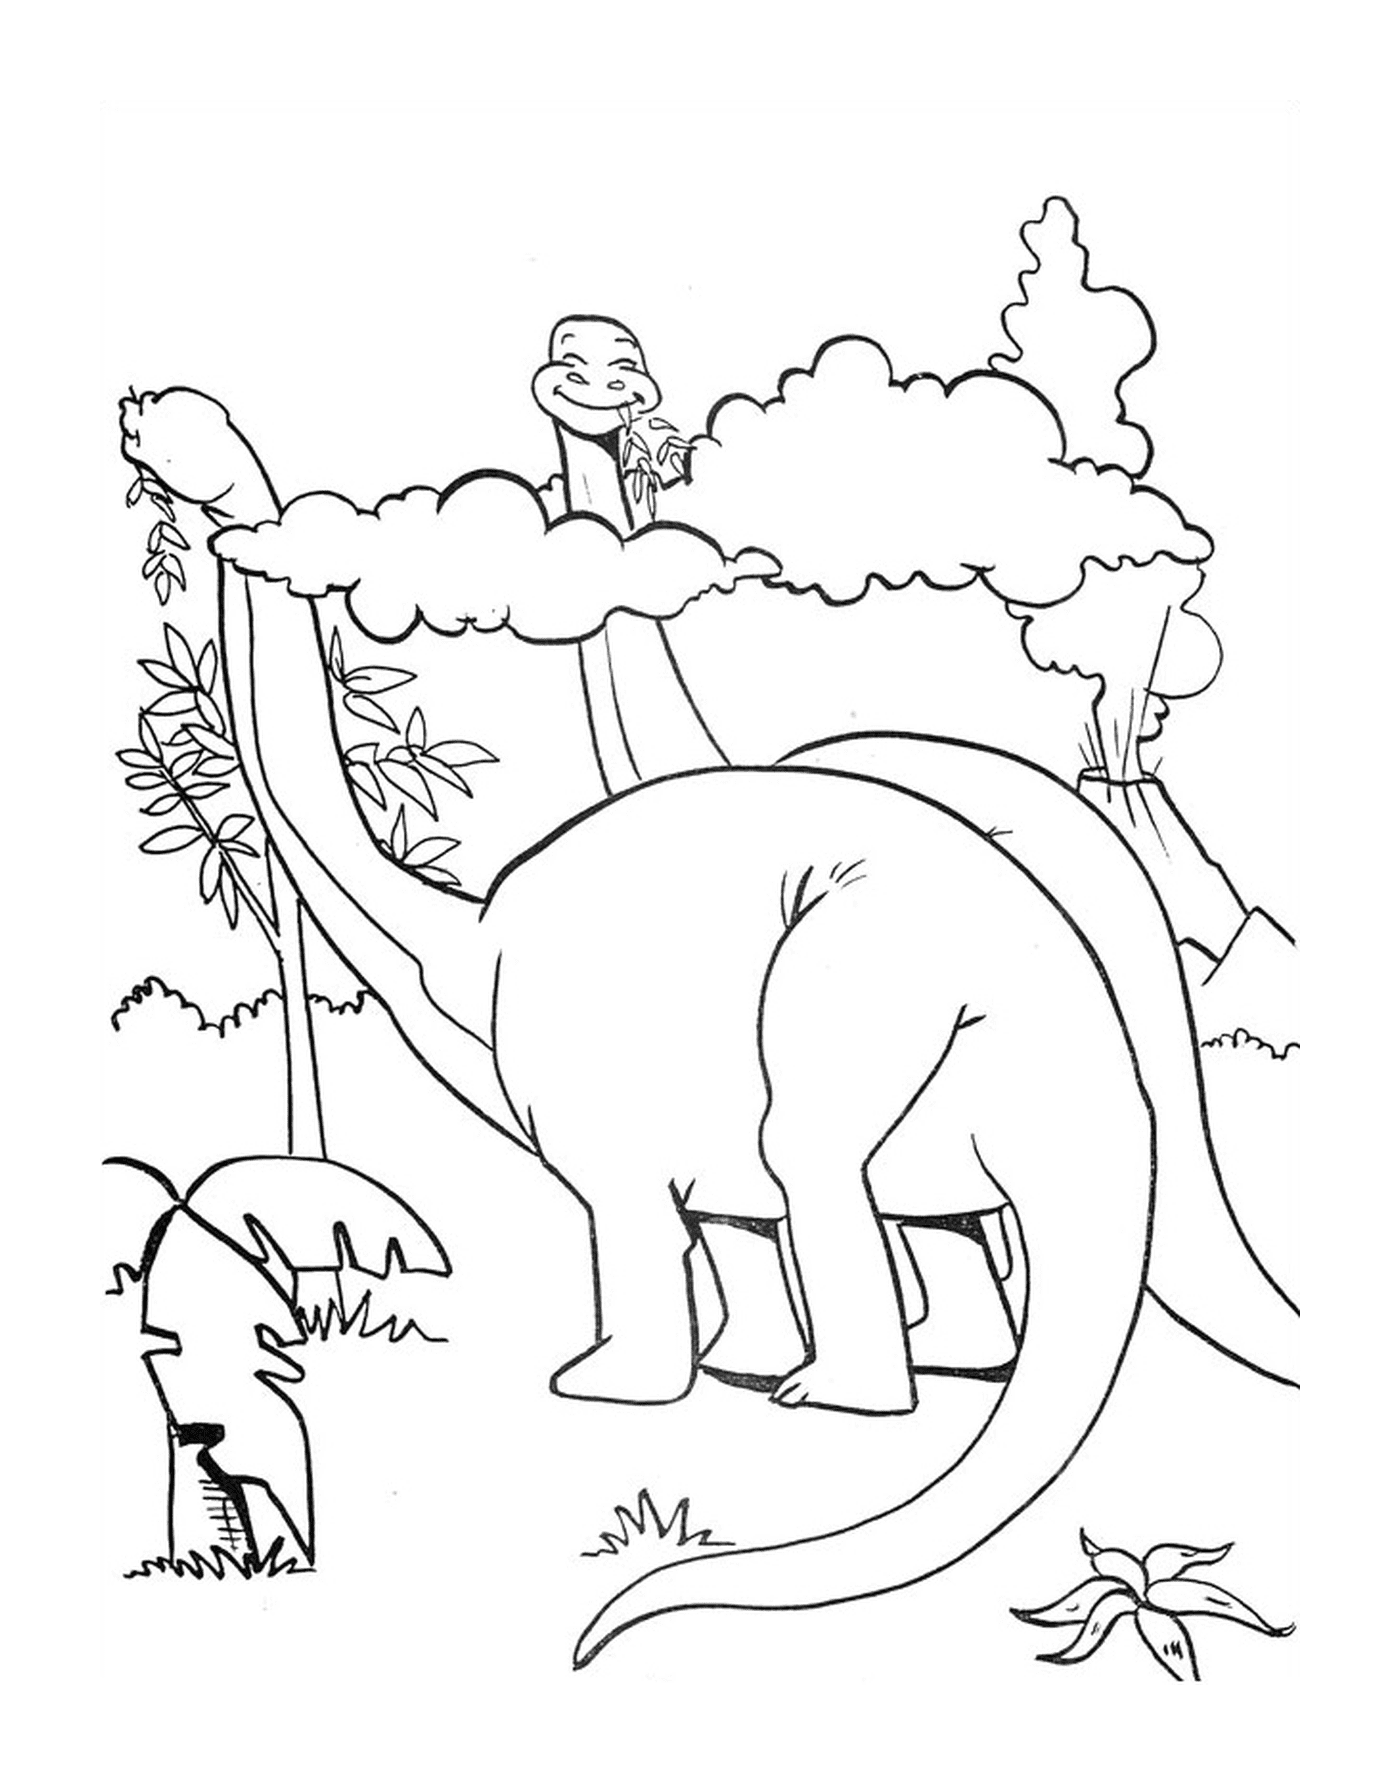  侏罗纪公园两只食草恐龙 和平相遇 